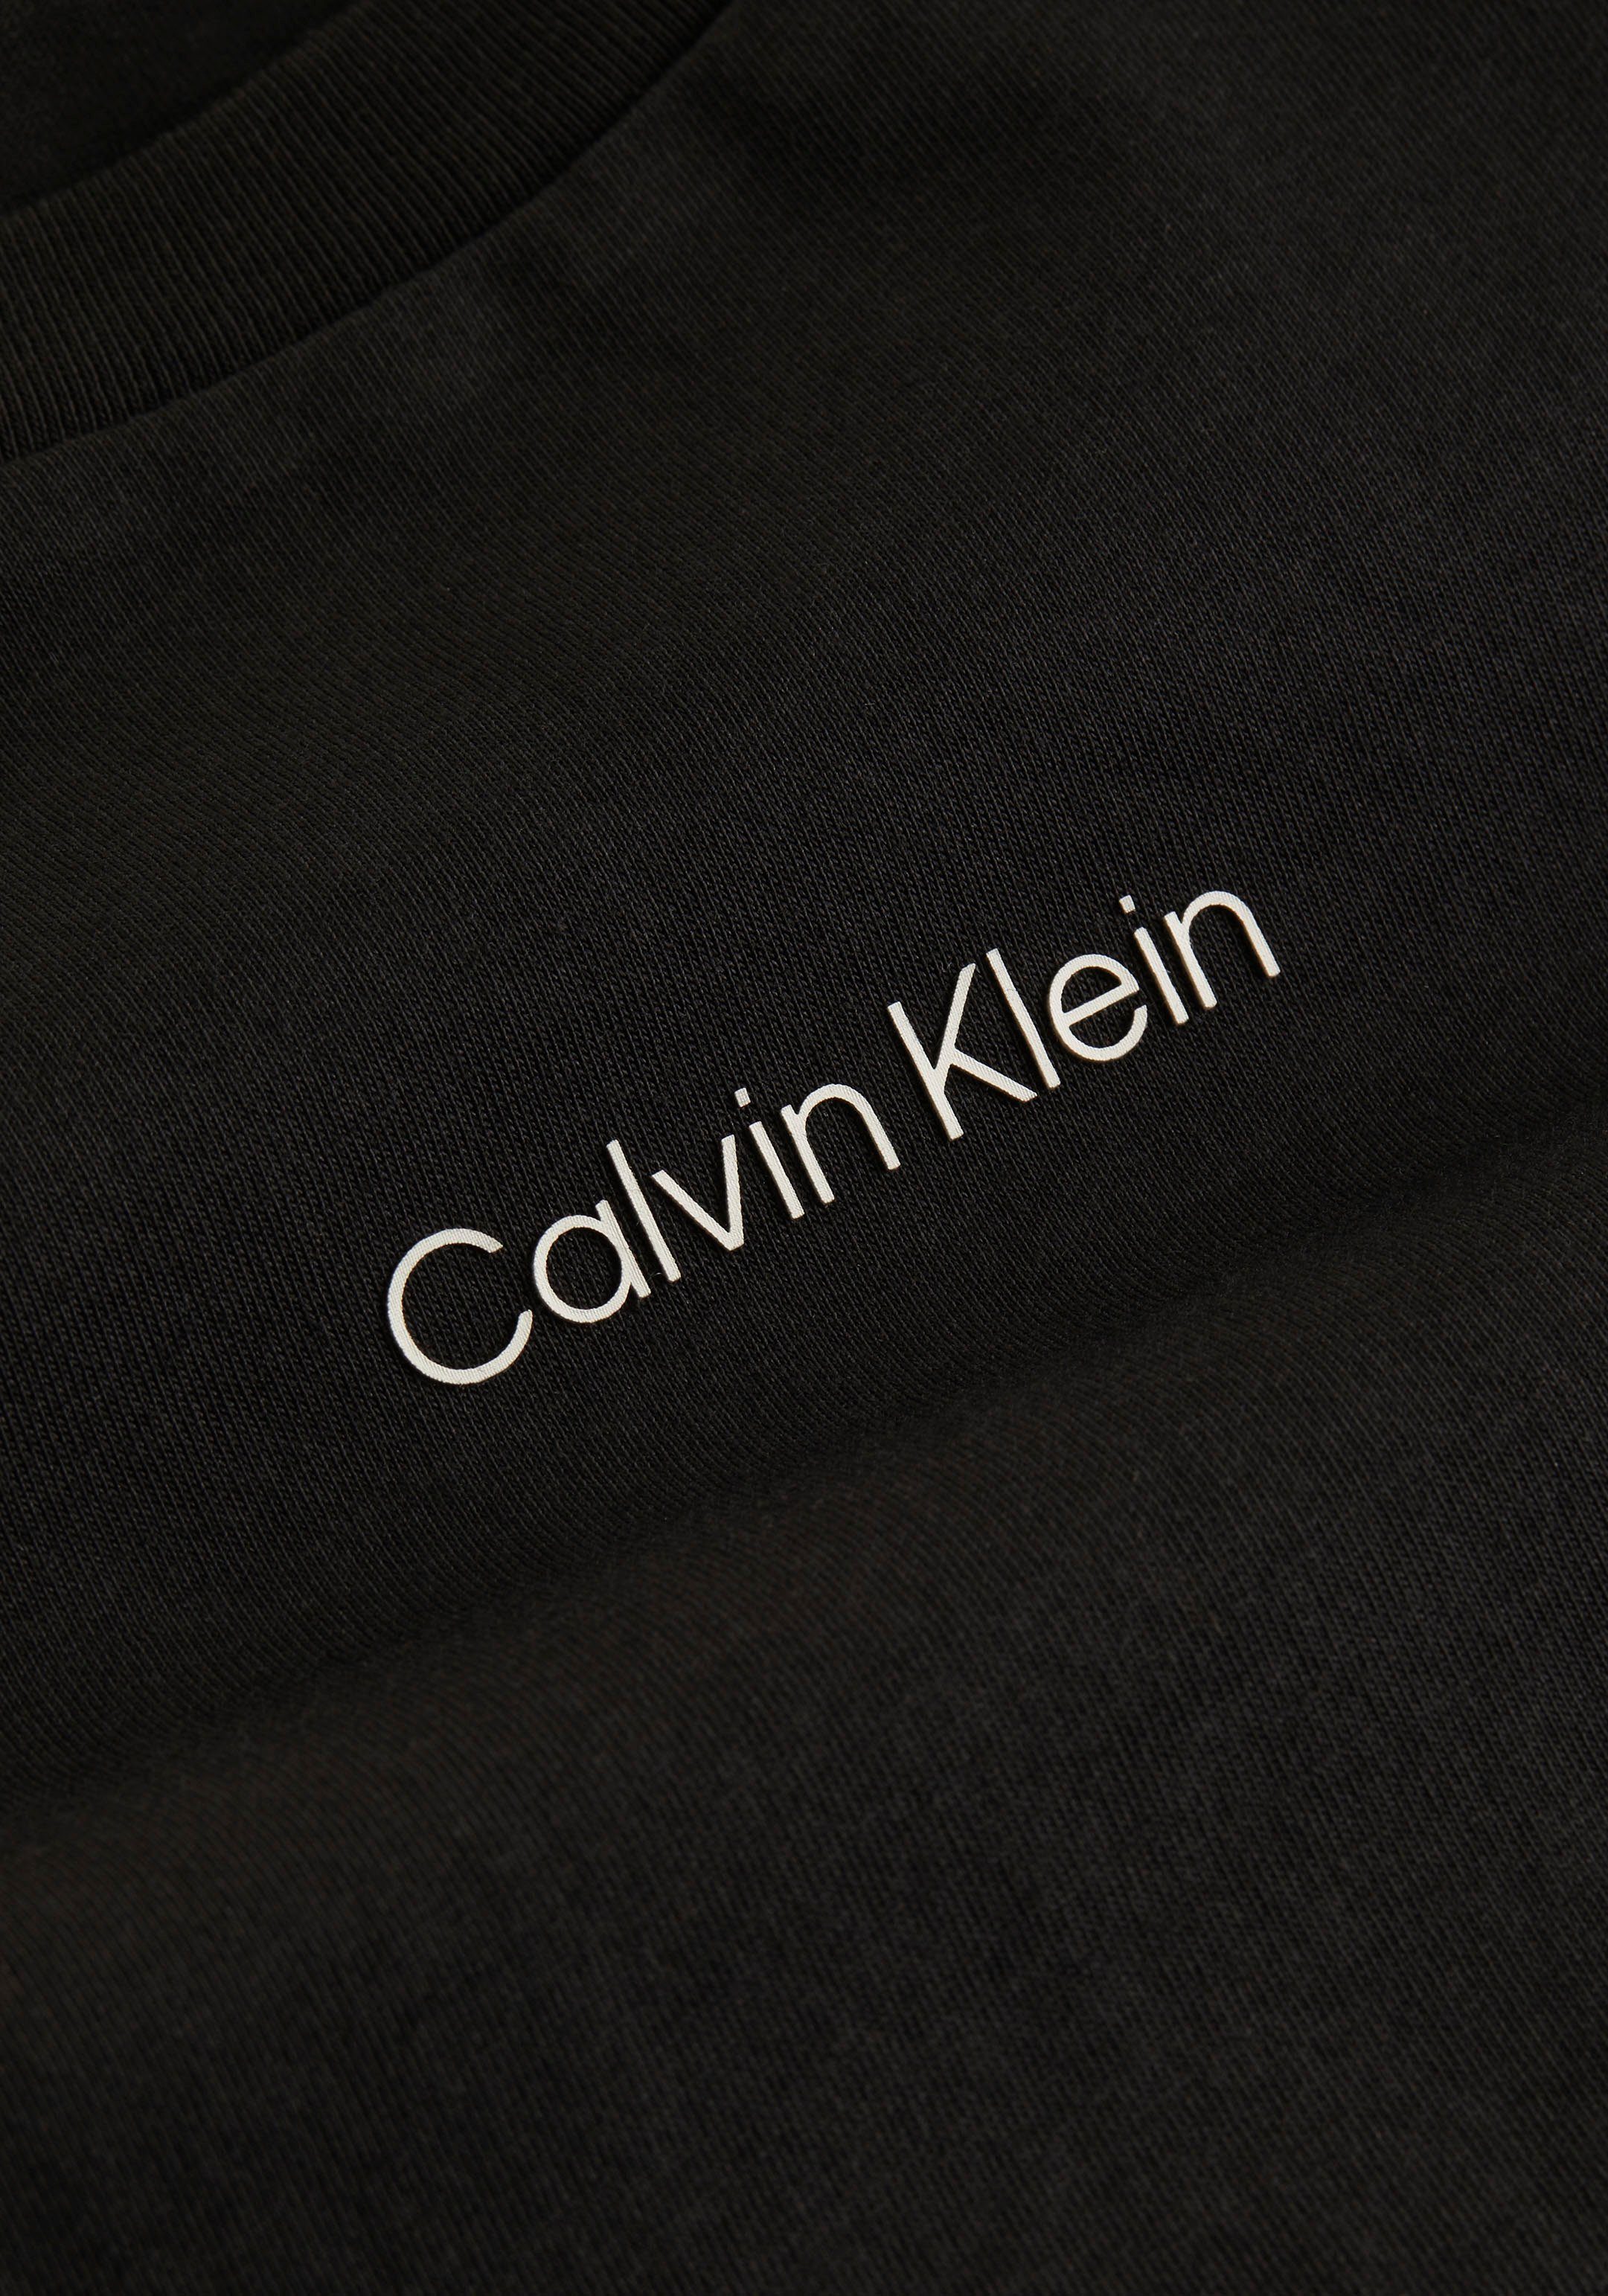 LOGO T-Shirt Ck-Black MICRO Baumwolle Klein aus reiner Calvin T-SHIRT